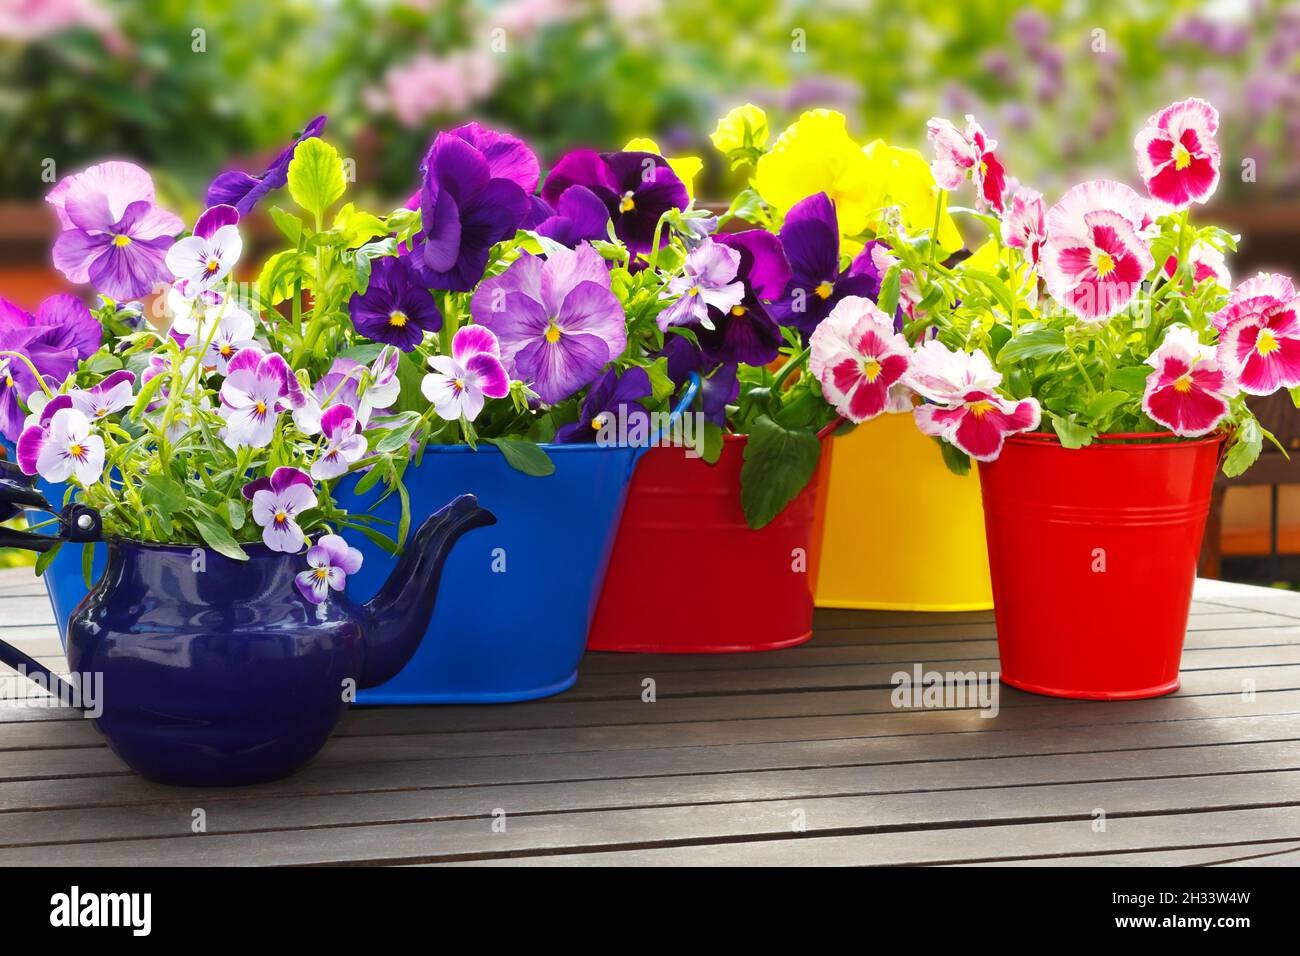 Fleurs de pansy violettes, violettes, rouges et jaunes en 4 pots et une carafe émaillée sur une table de balcon en bois au printemps, modèle d'arrière-plan Banque D'Images